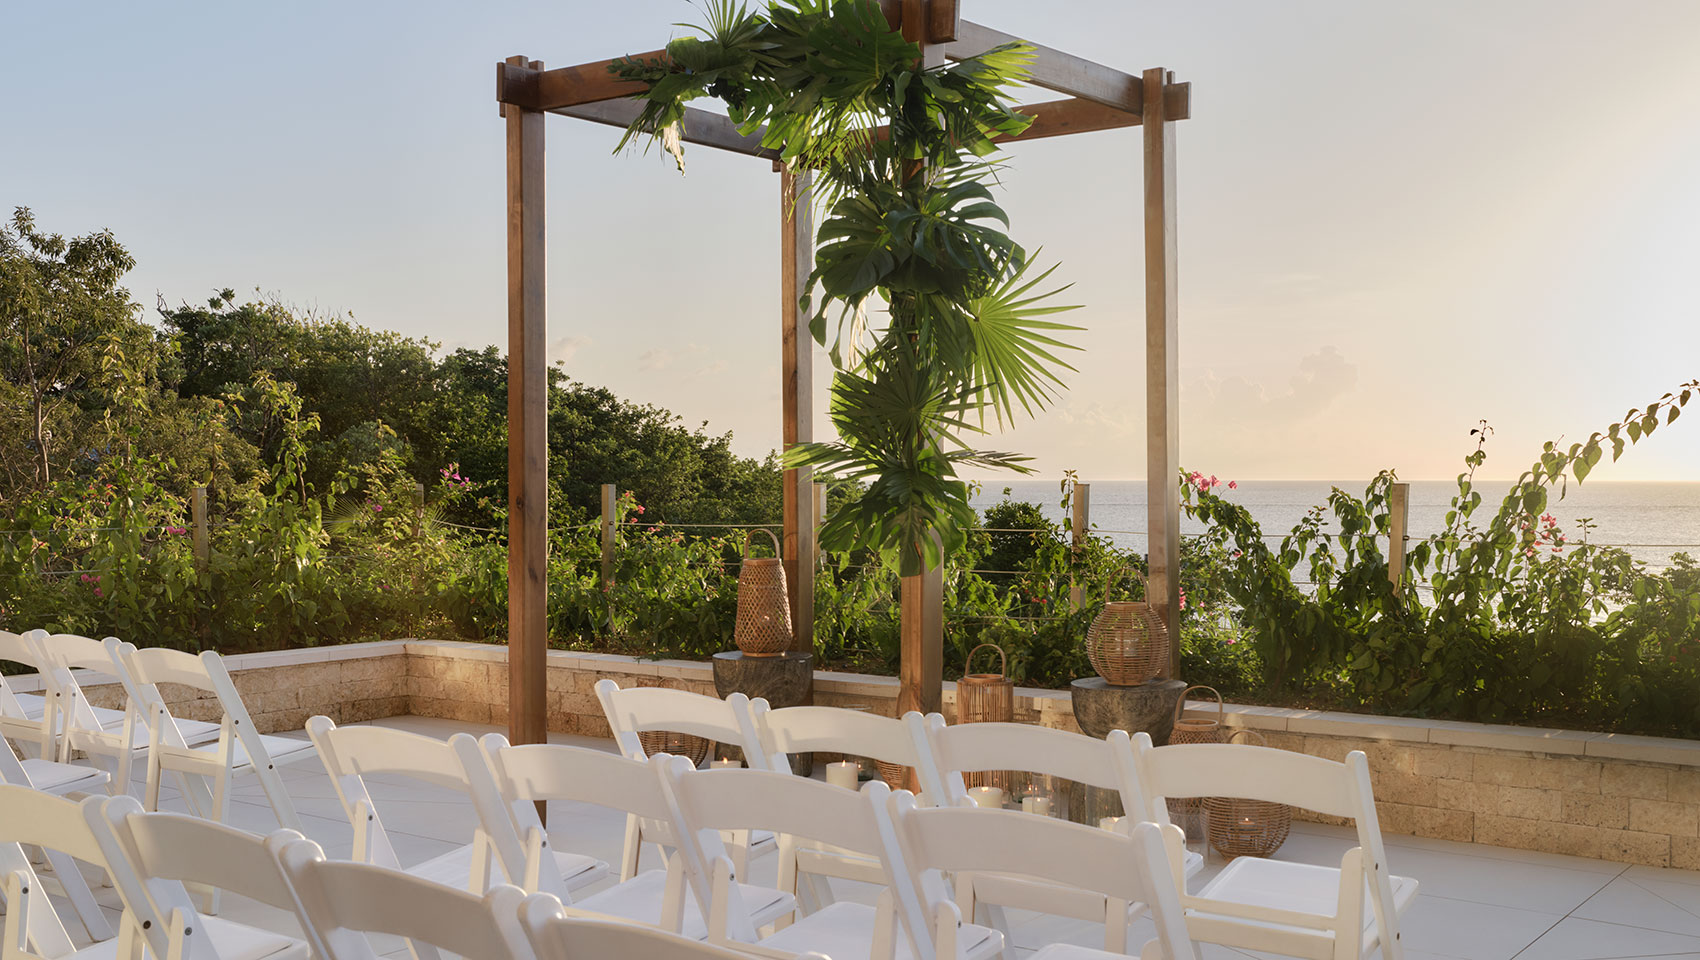 Roatan outdoor patio overlooking ocean with small ceremony set up